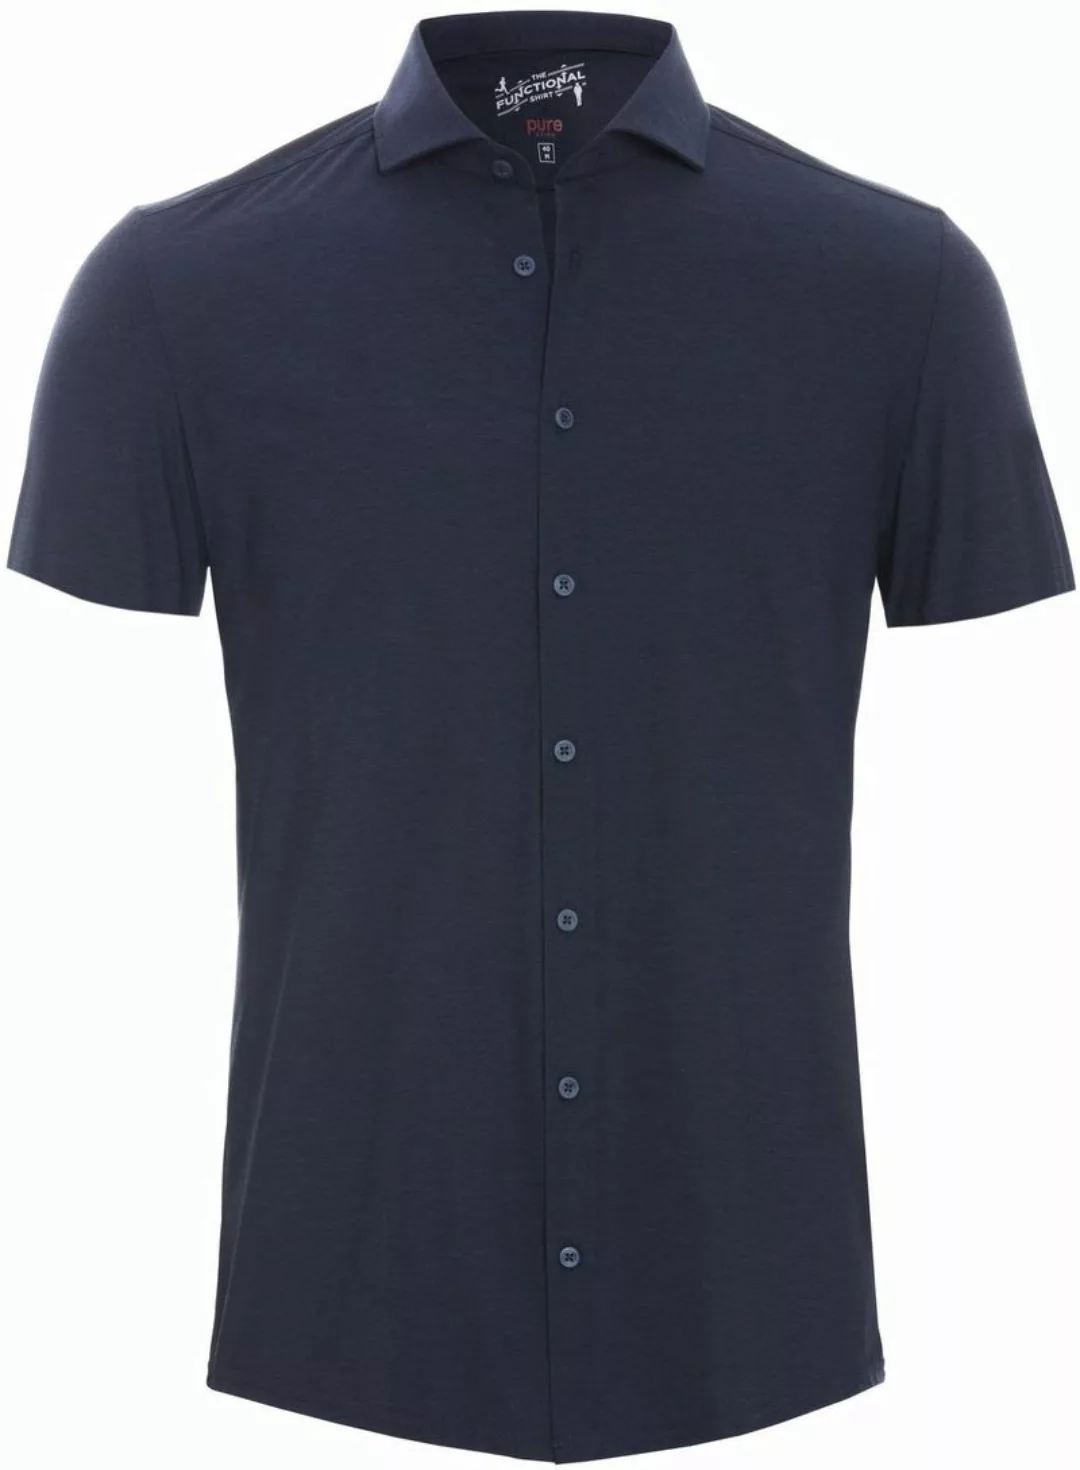 Pure Kurzarmhemd The Functional Shirt Navy - Größe 43 günstig online kaufen